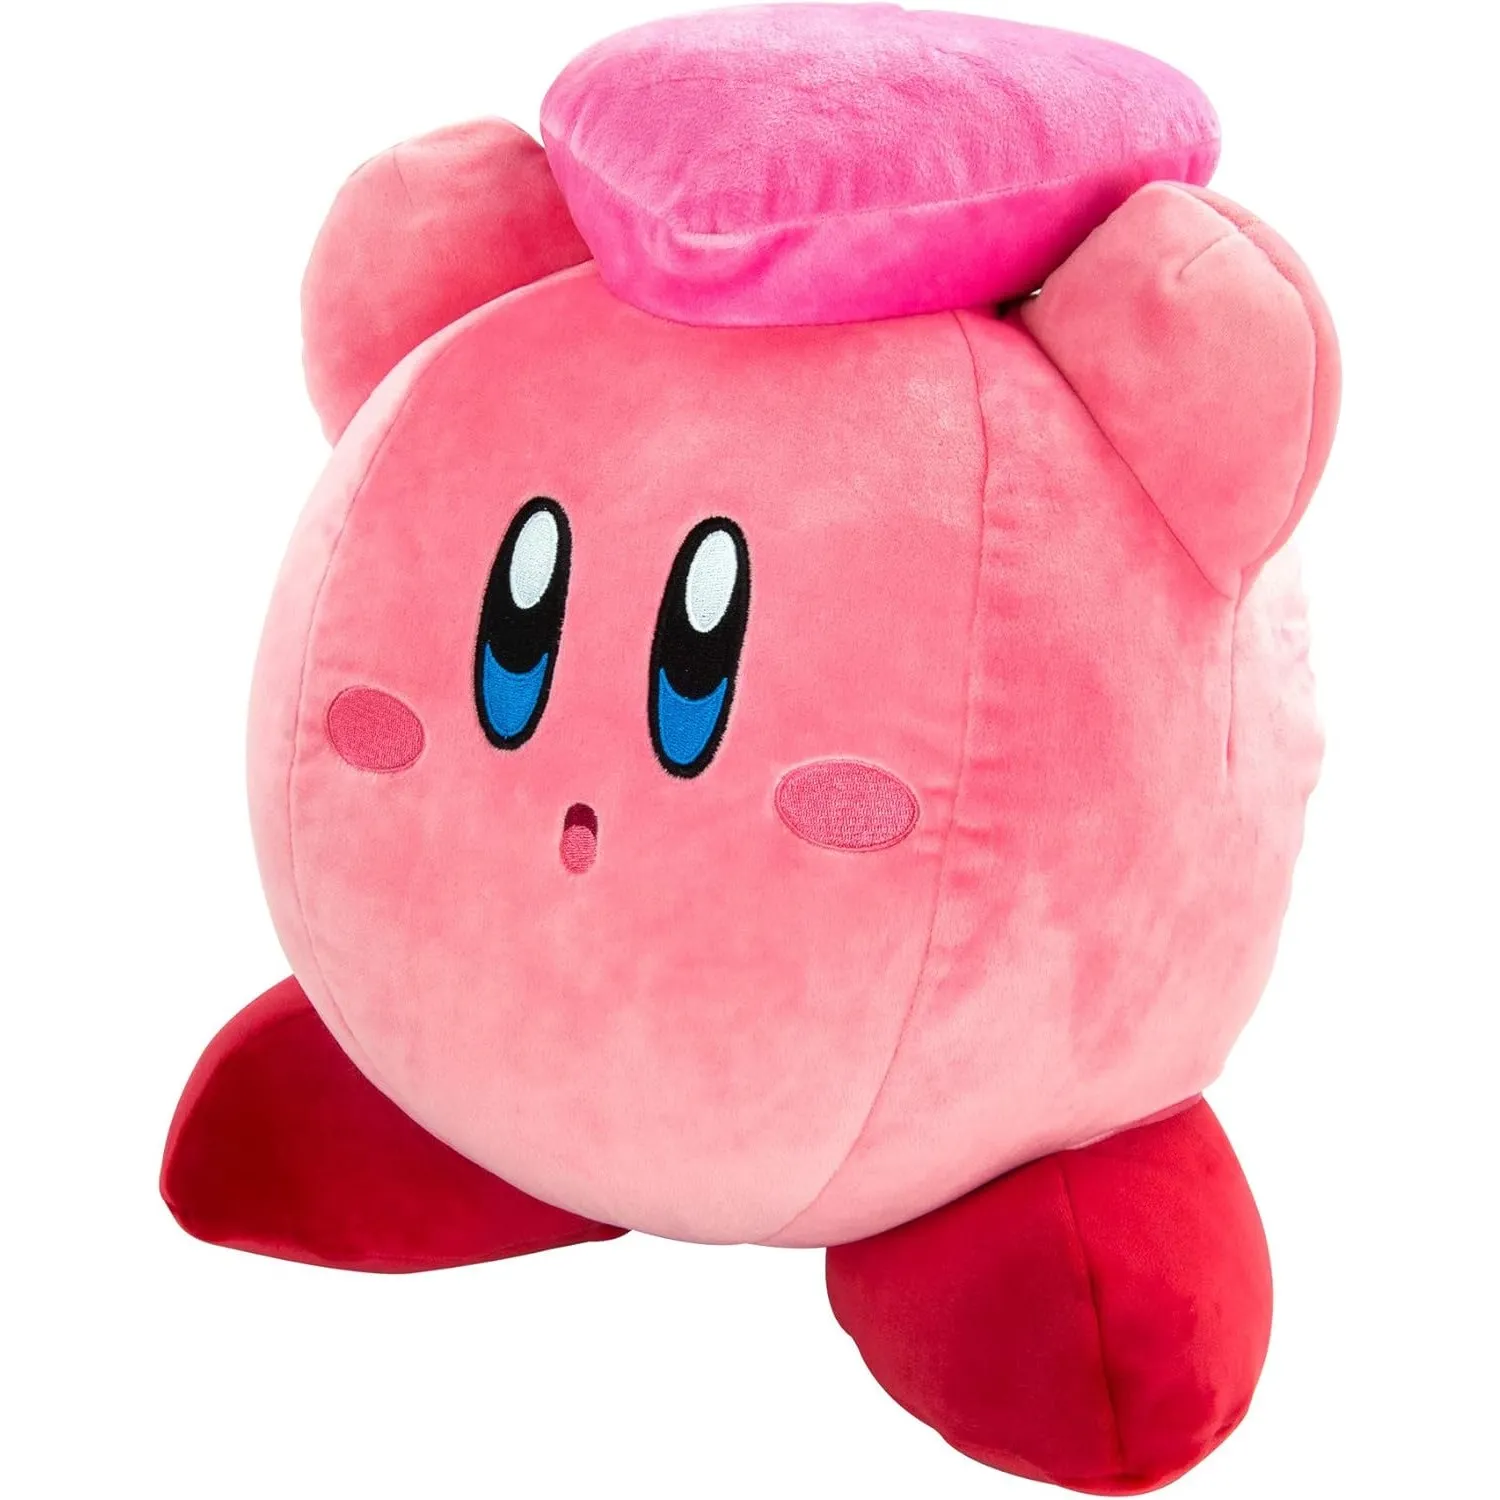 Kirby e l'Orsetto del Cuore degli Amici